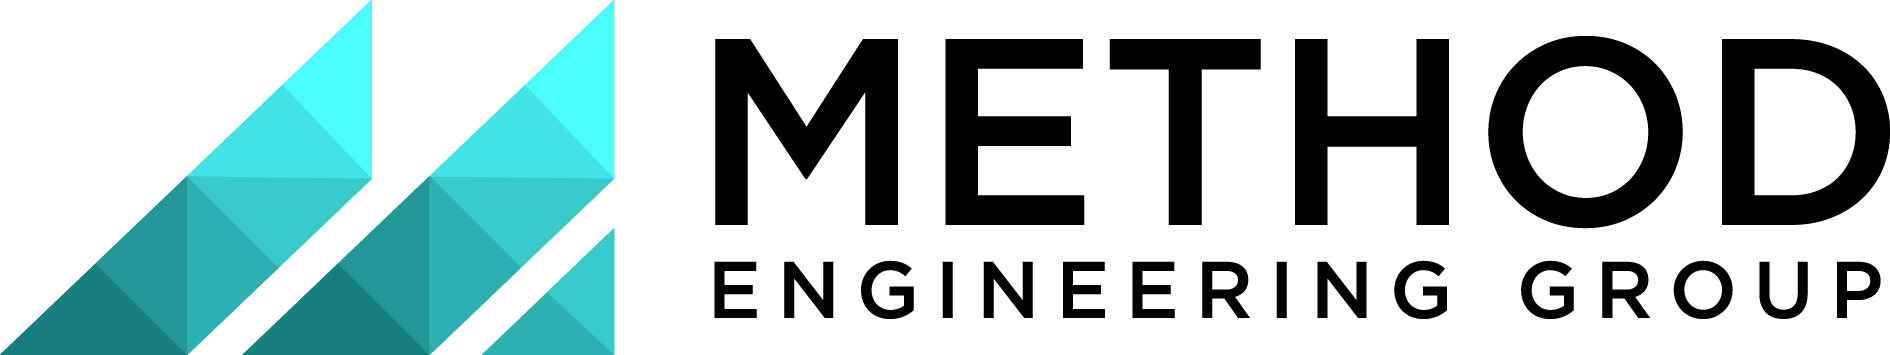 Method Engineering Group